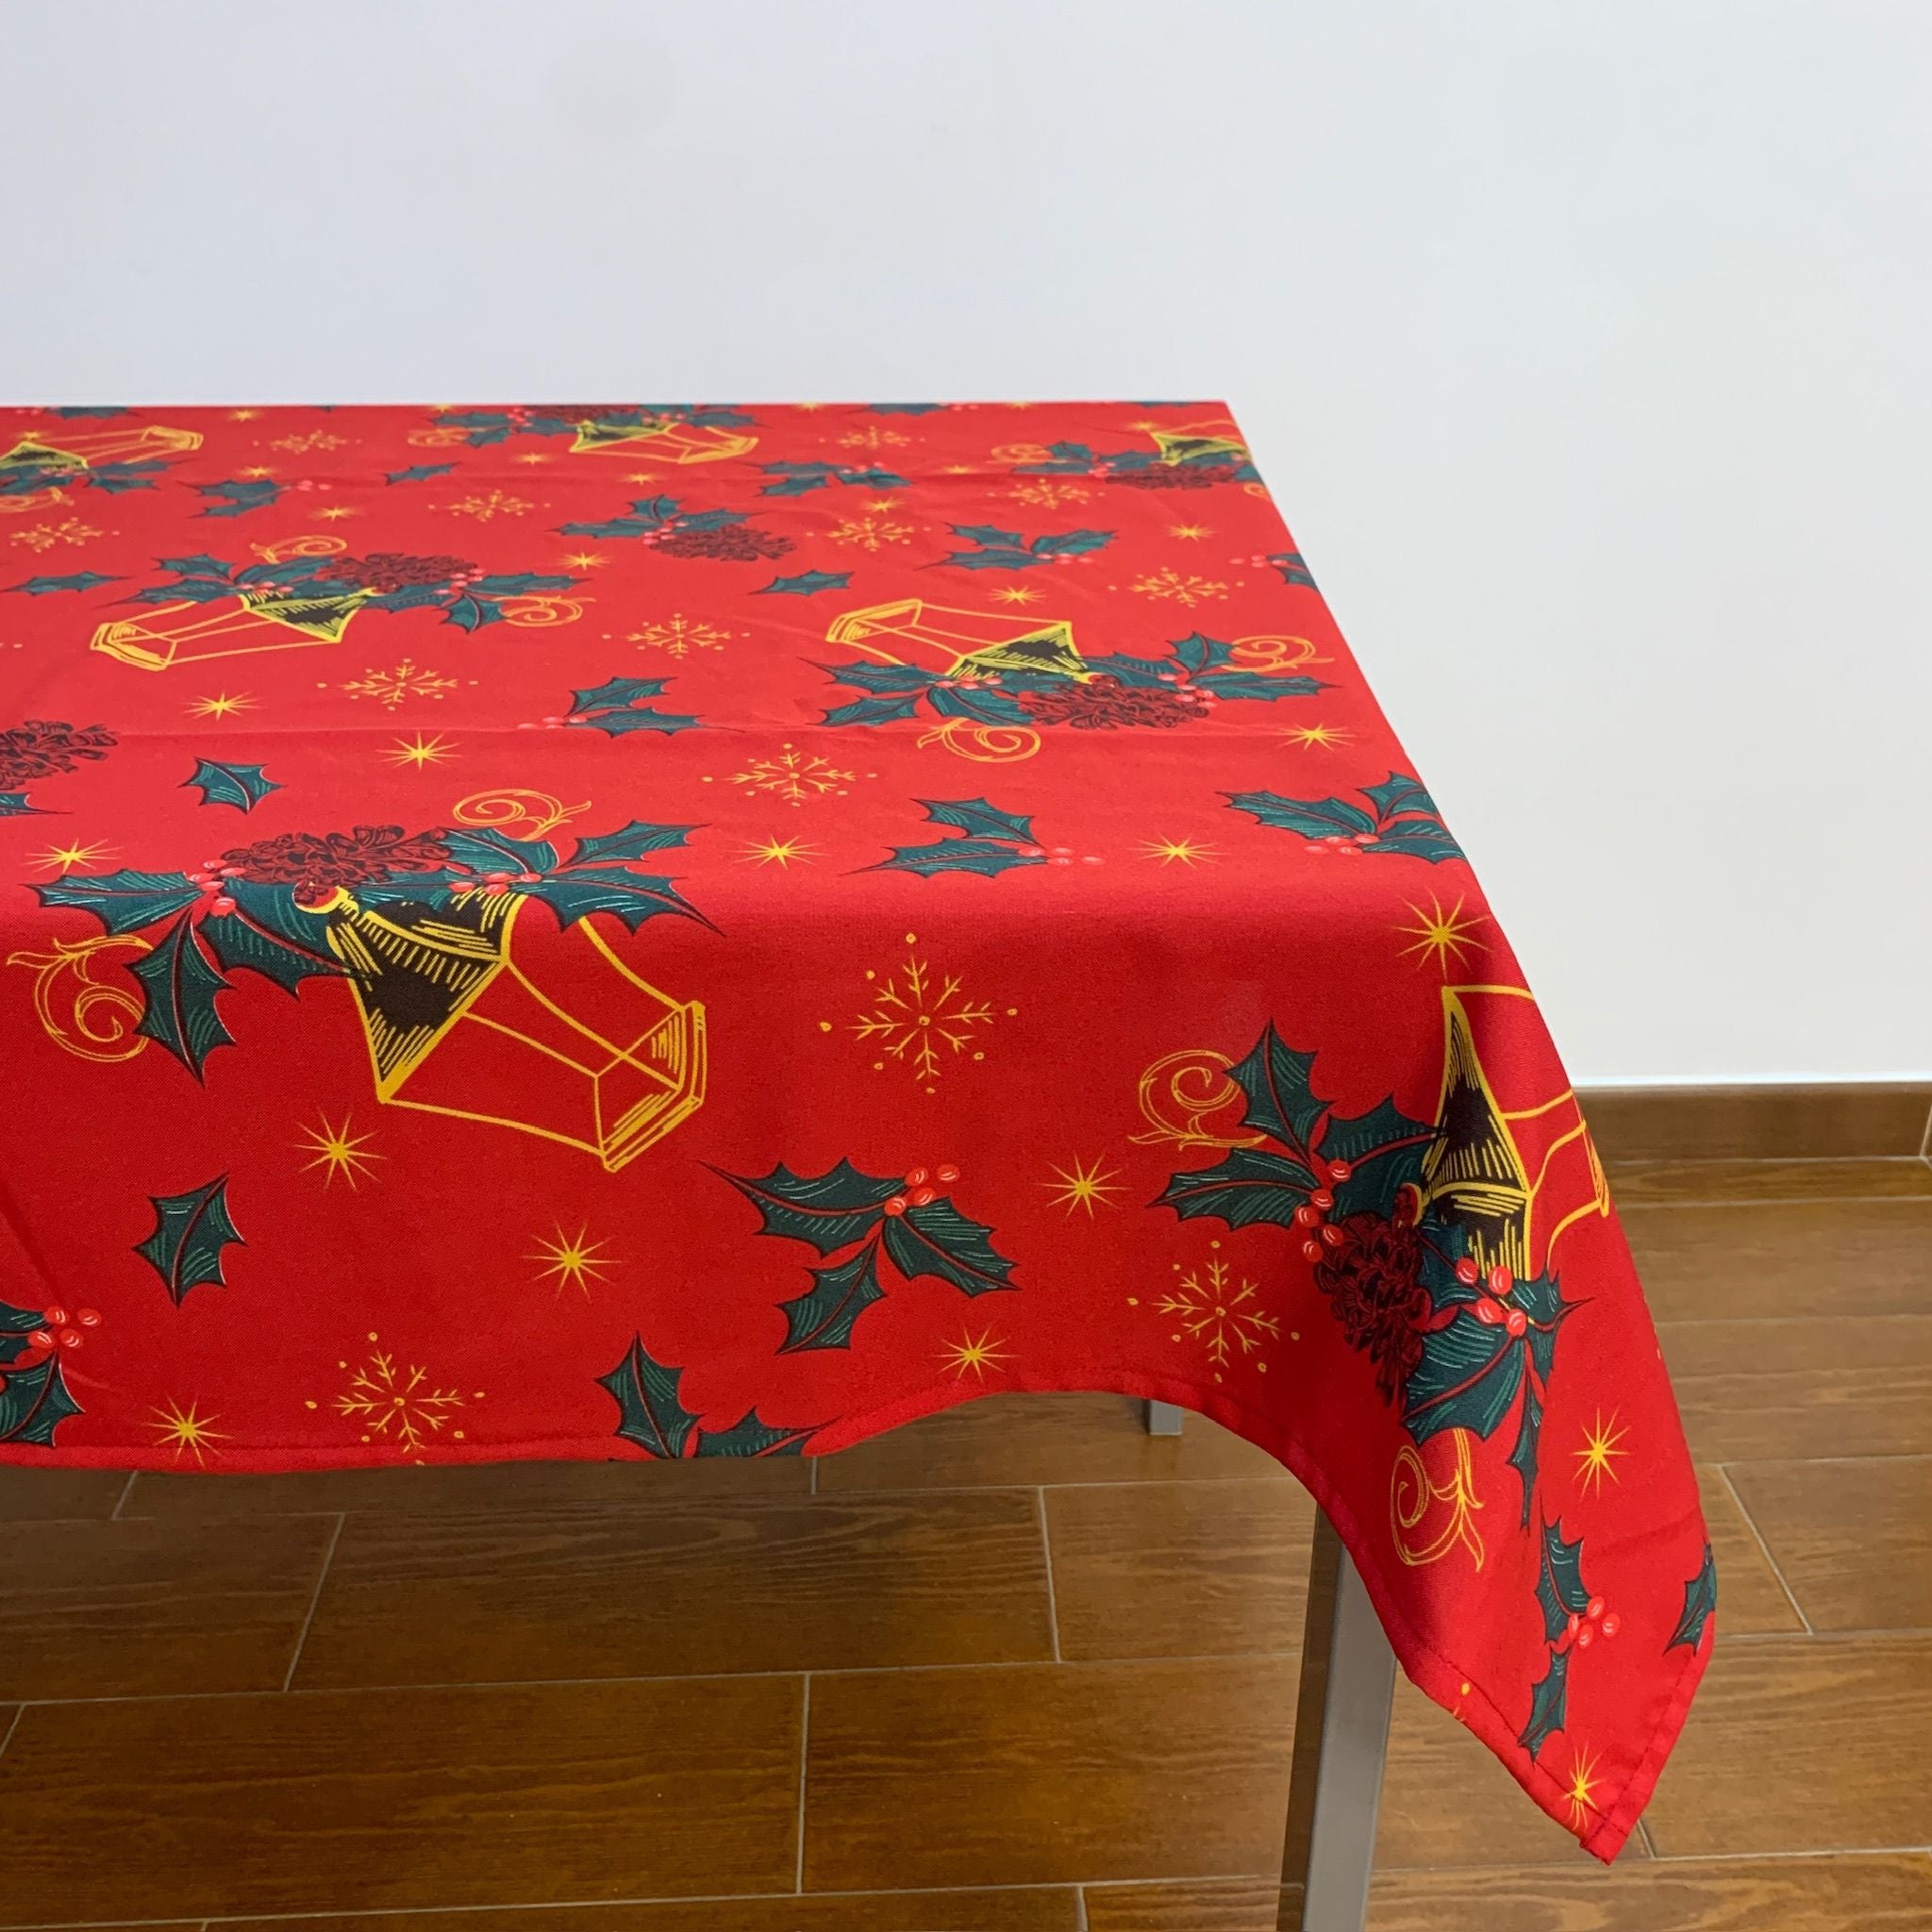 Toalha de Natal vermelha com candeeiros enfeitados com azevinhos espalhados delicadamente por toda a toalha, conjuntamente com pequenas estrelas douradas.